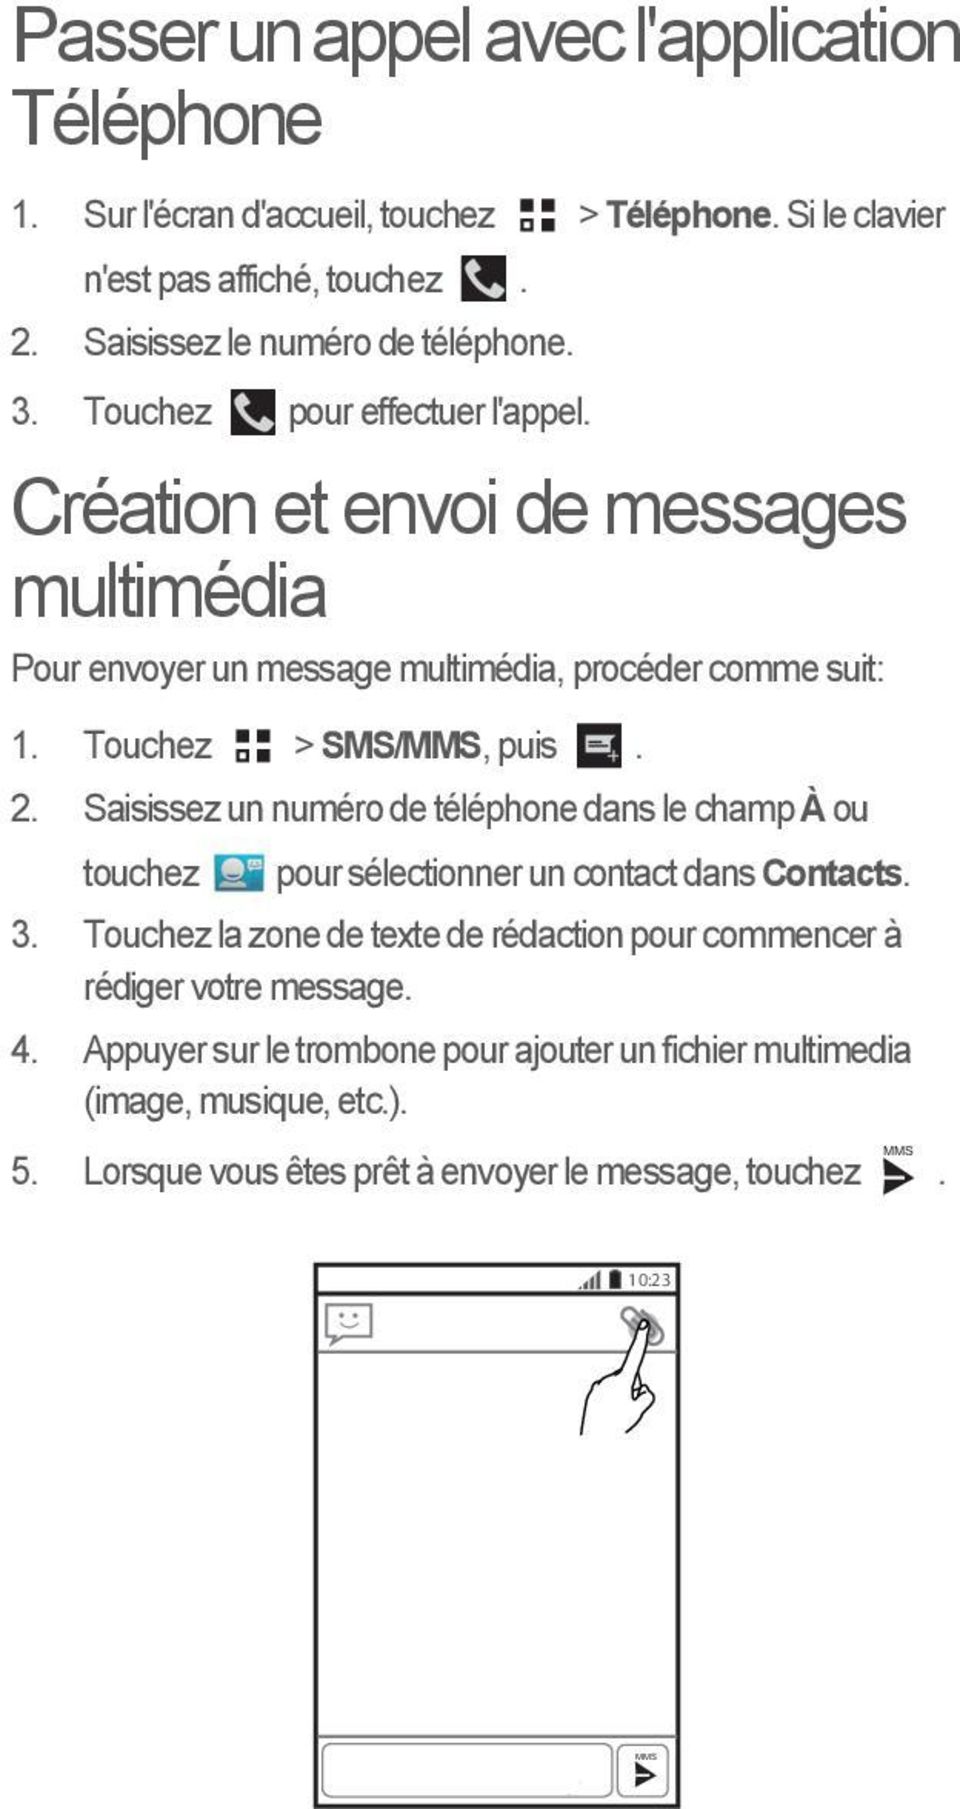 Création et envoi de messages multimédia Pour envoyer un message multimédia, procéder comme suit: MMS 1. Touchez > SMS/MMS, puis. 2.